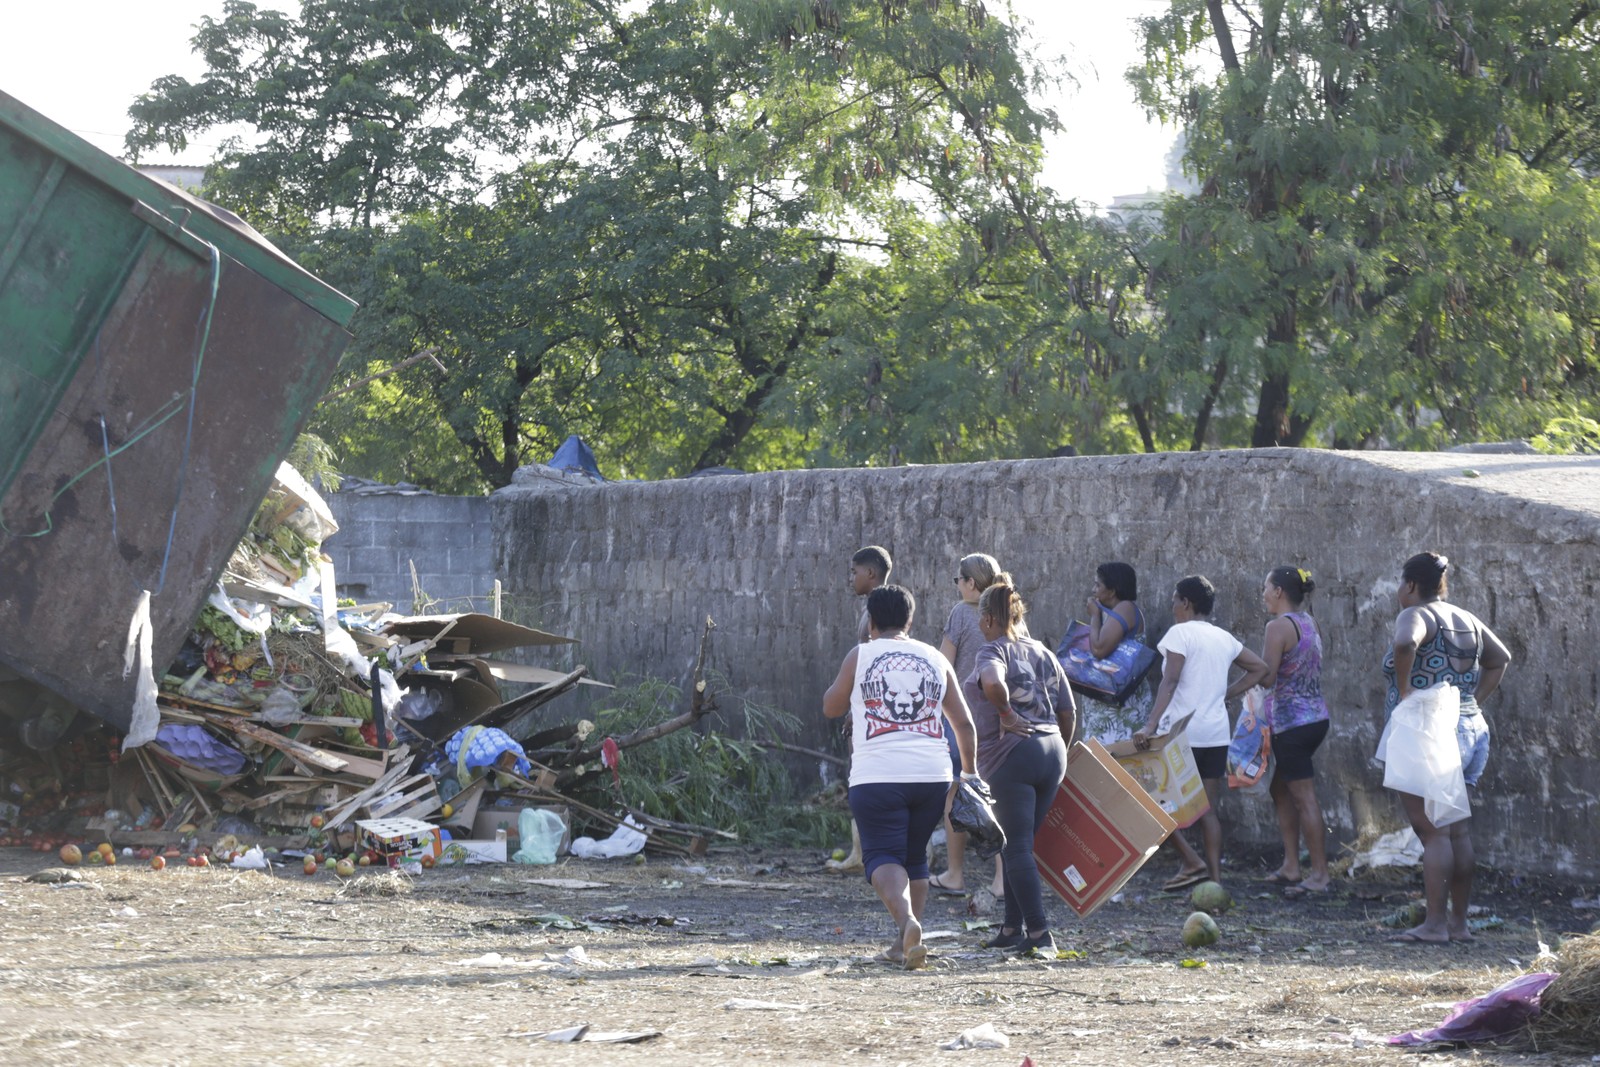 À caça de restos: pessoas buscam alimentos que ainda possam ser consumidos em meio ao descarte do Ceasa, em Irajá — Foto: Domingos Peixoto / Agência O Globo